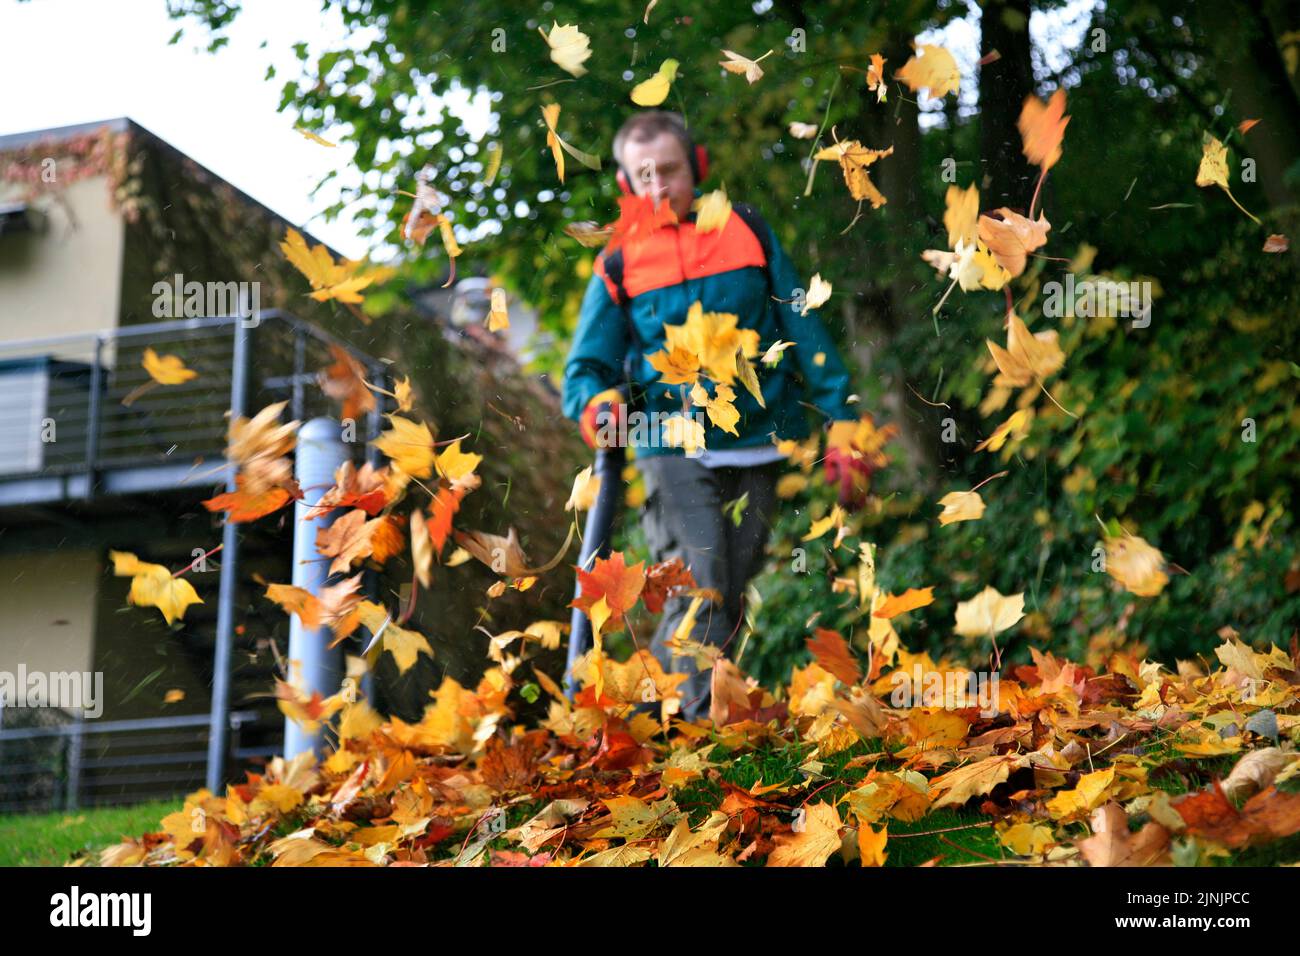 Jardinero trabajando con soplador de hojas, Alemania Foto de stock